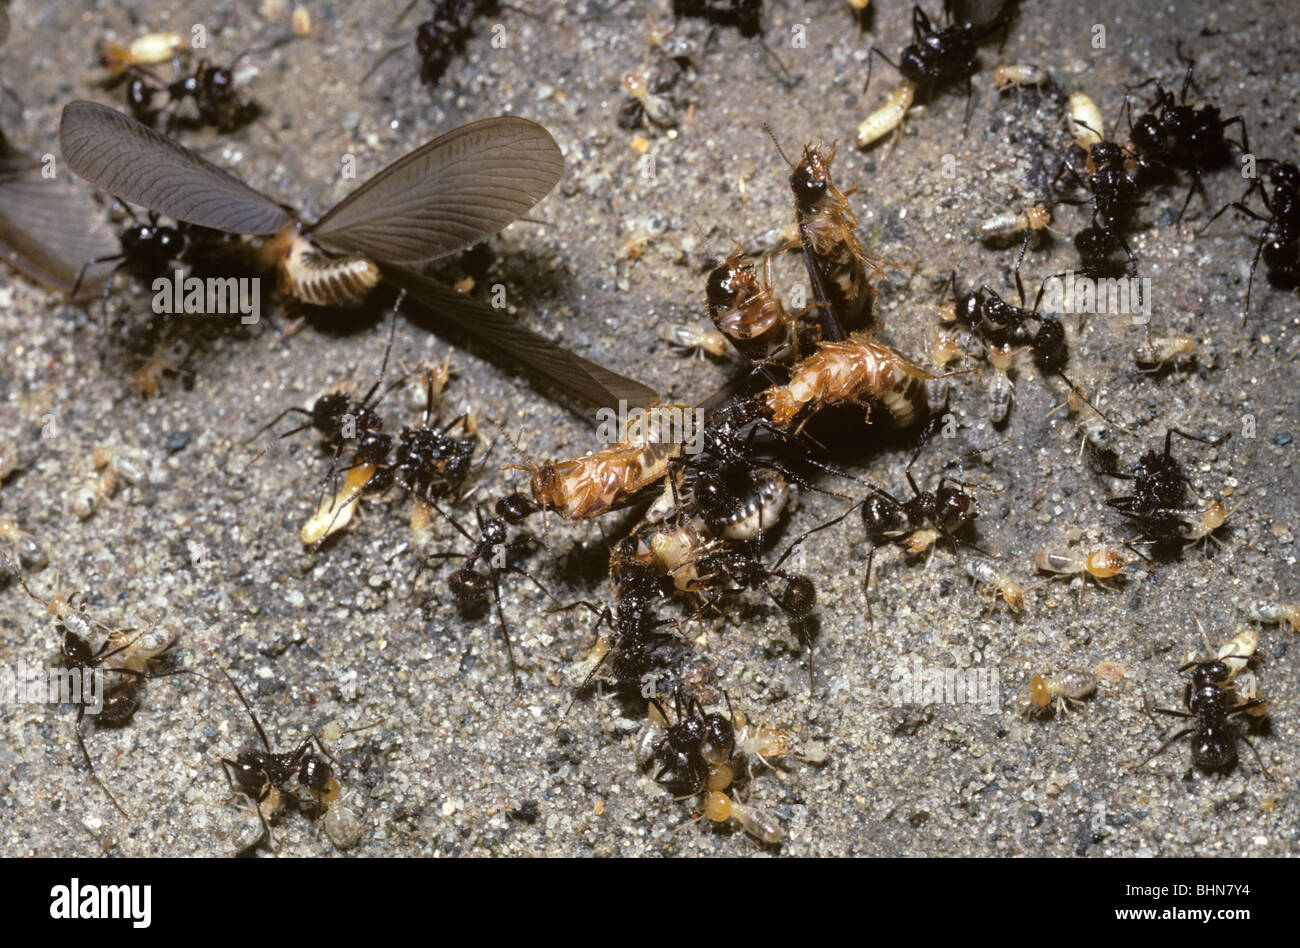 Las termitas con alas termitas aladas (cf. Odontotermes obesus) se libera del nido por los trabajadores y atacado por hormigas, Nepal Foto de stock